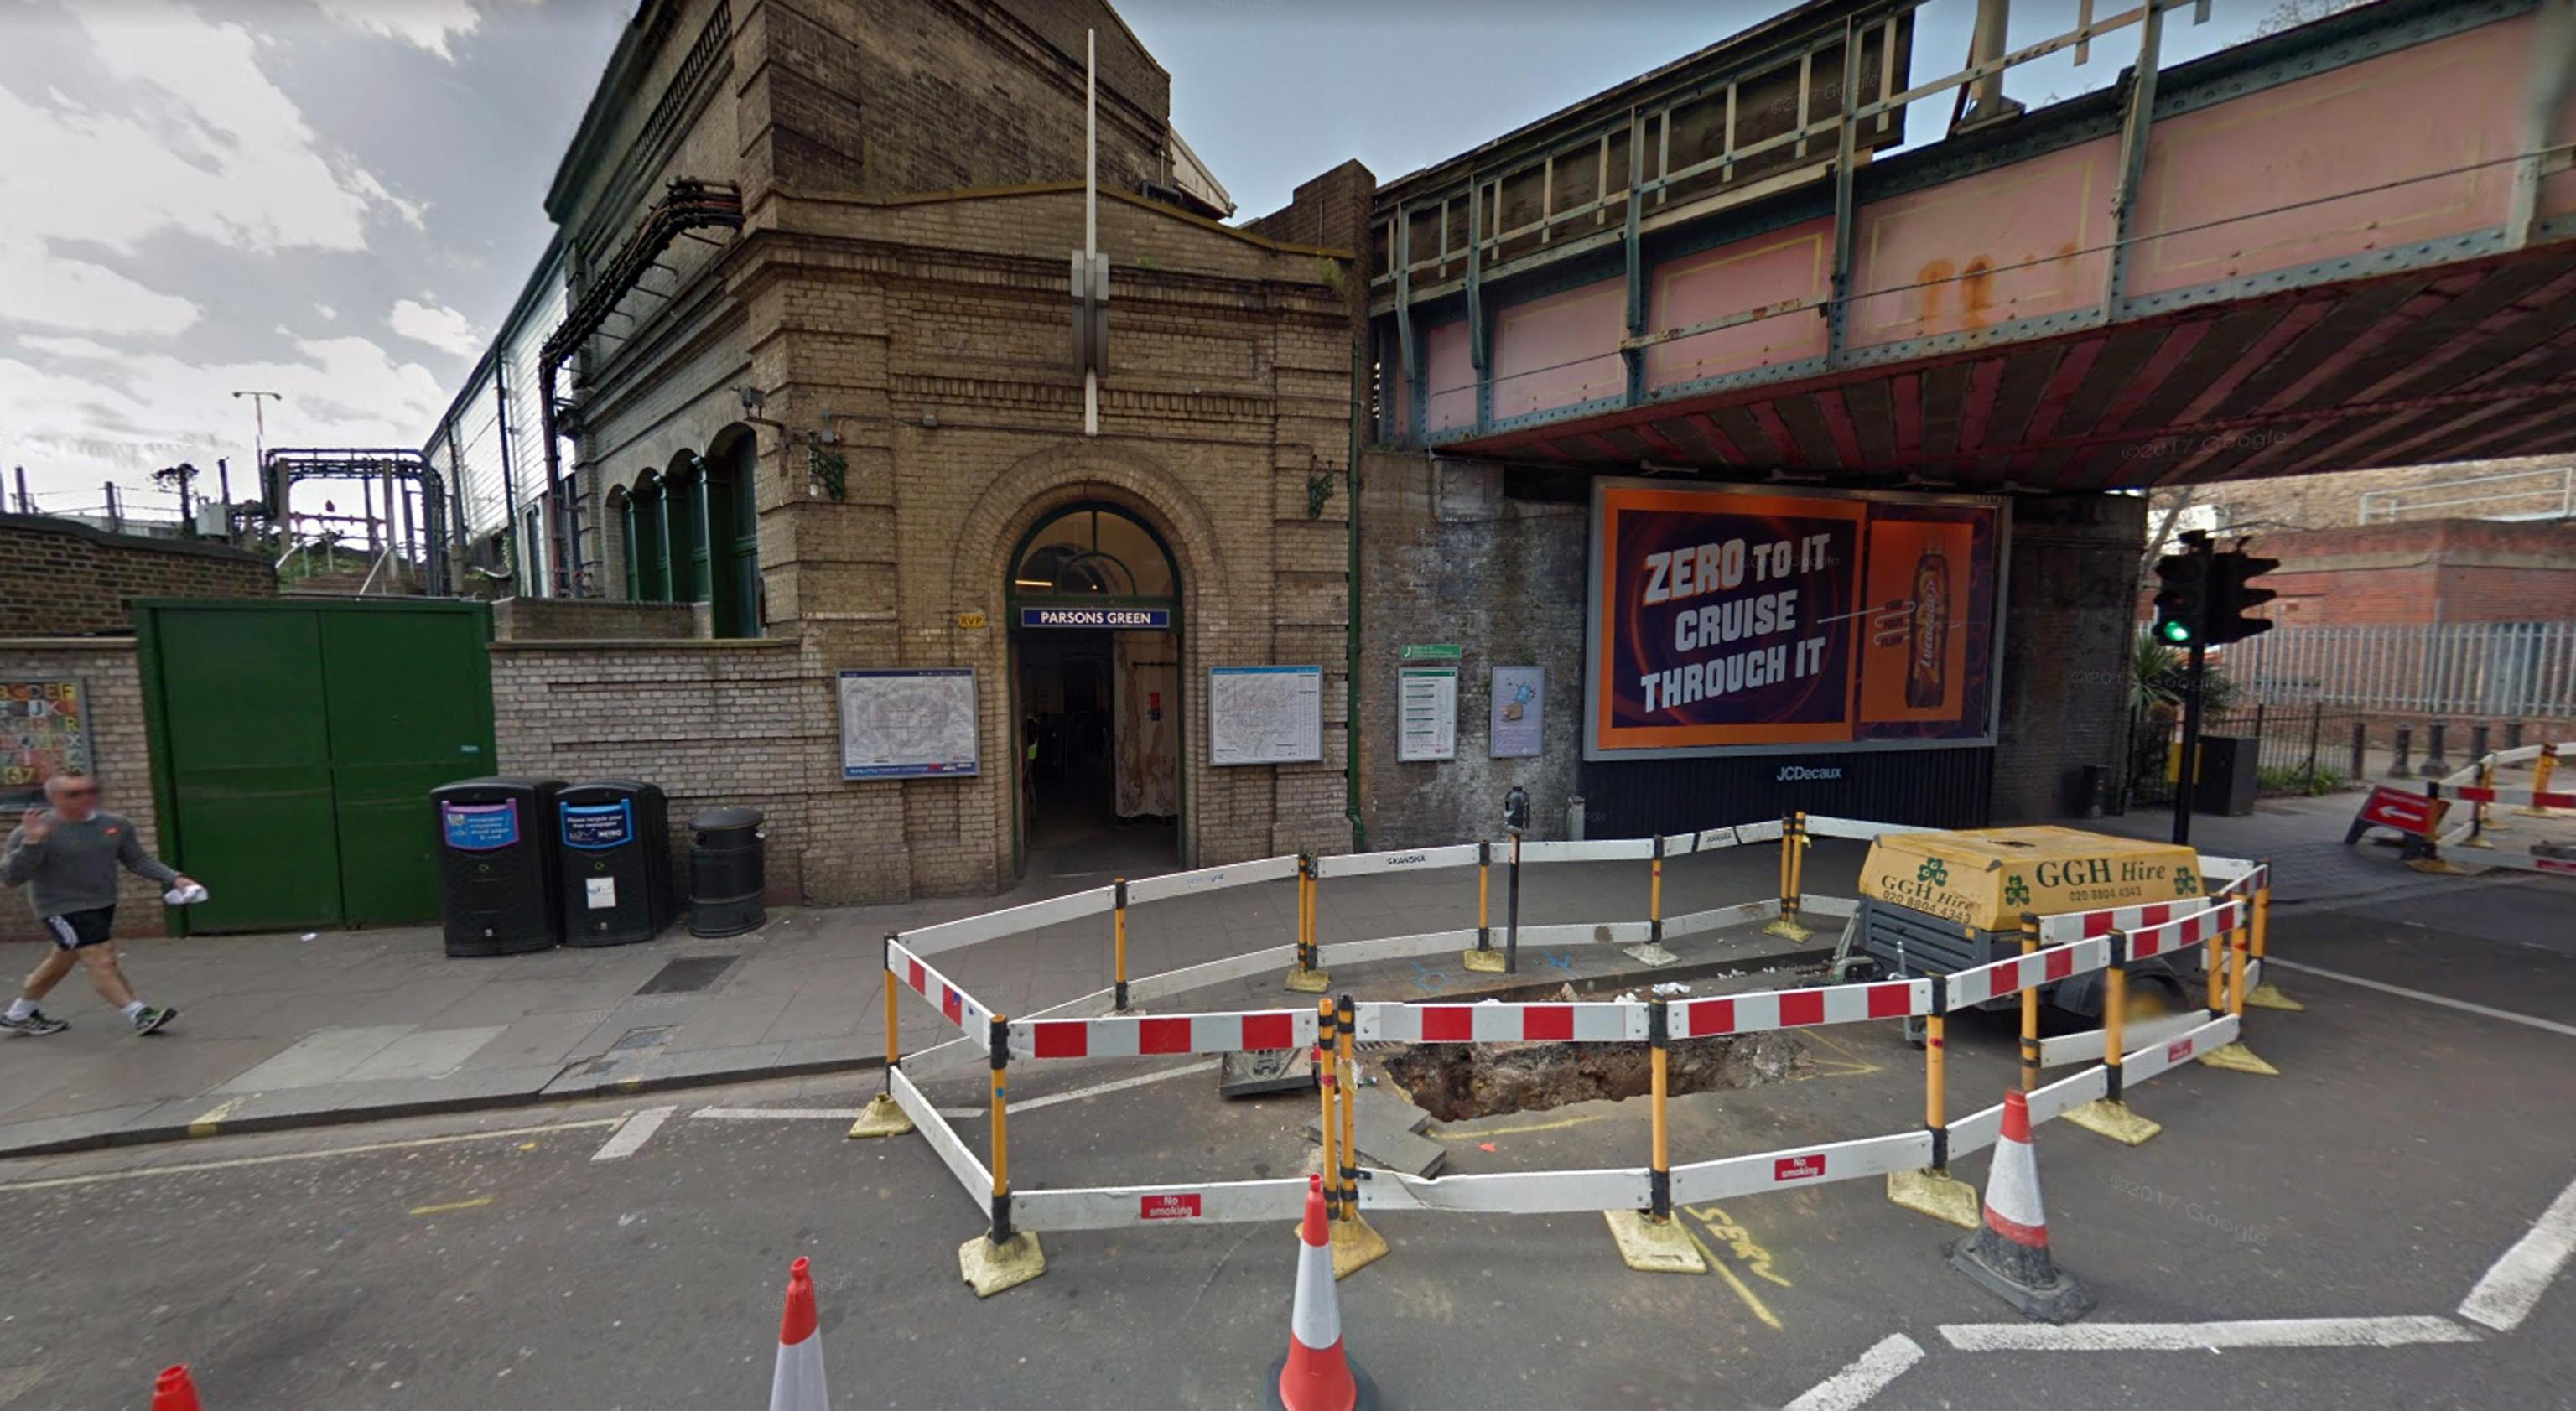 Lo scenario che si presenta fuori dalla stazione metro Parsons Green a Londra, dopo l'esplosione avvertita come una palla di fuoco dai presenti